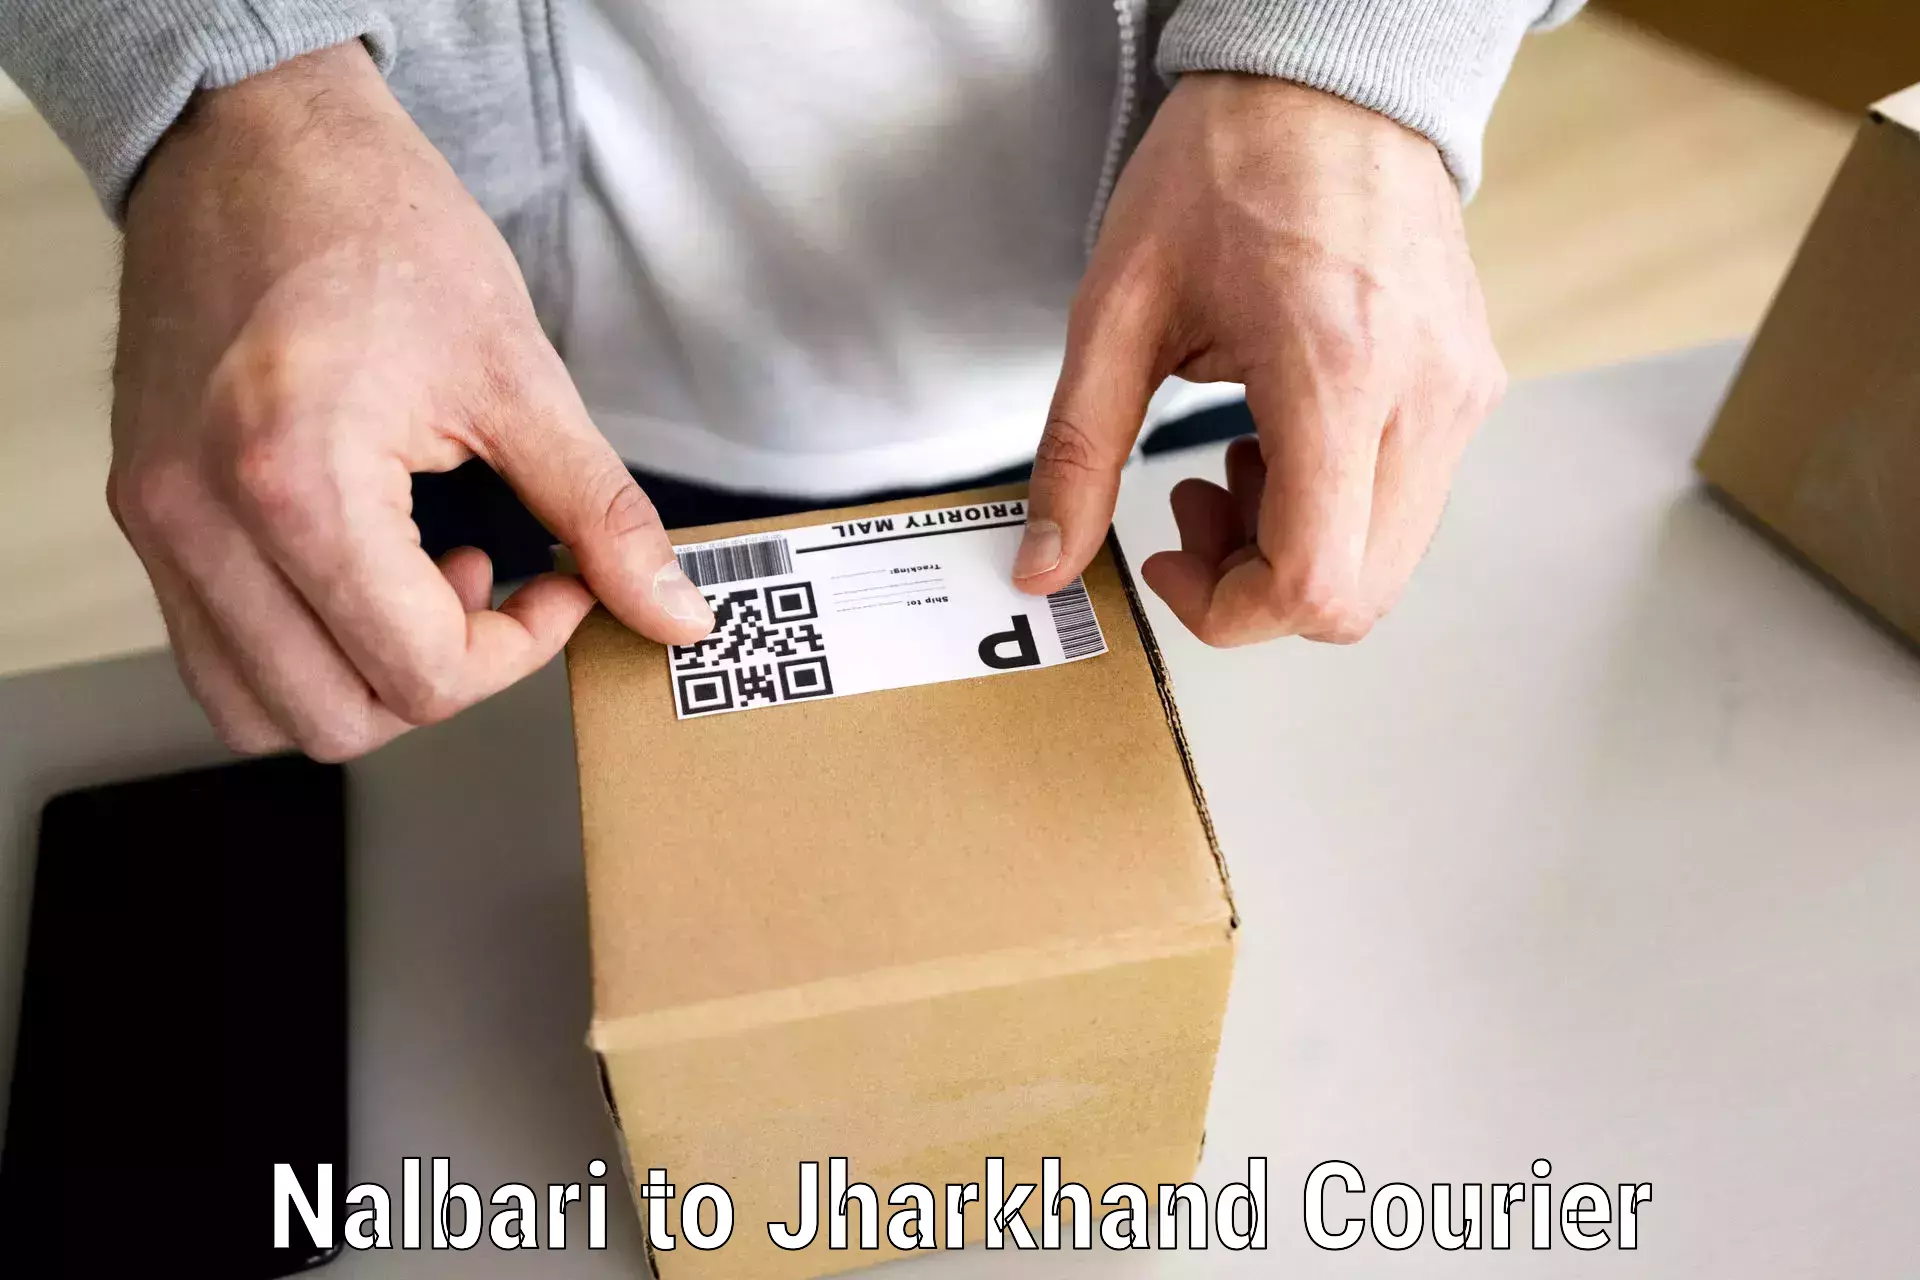 Efficient furniture movers Nalbari to Dhalbhumgarh